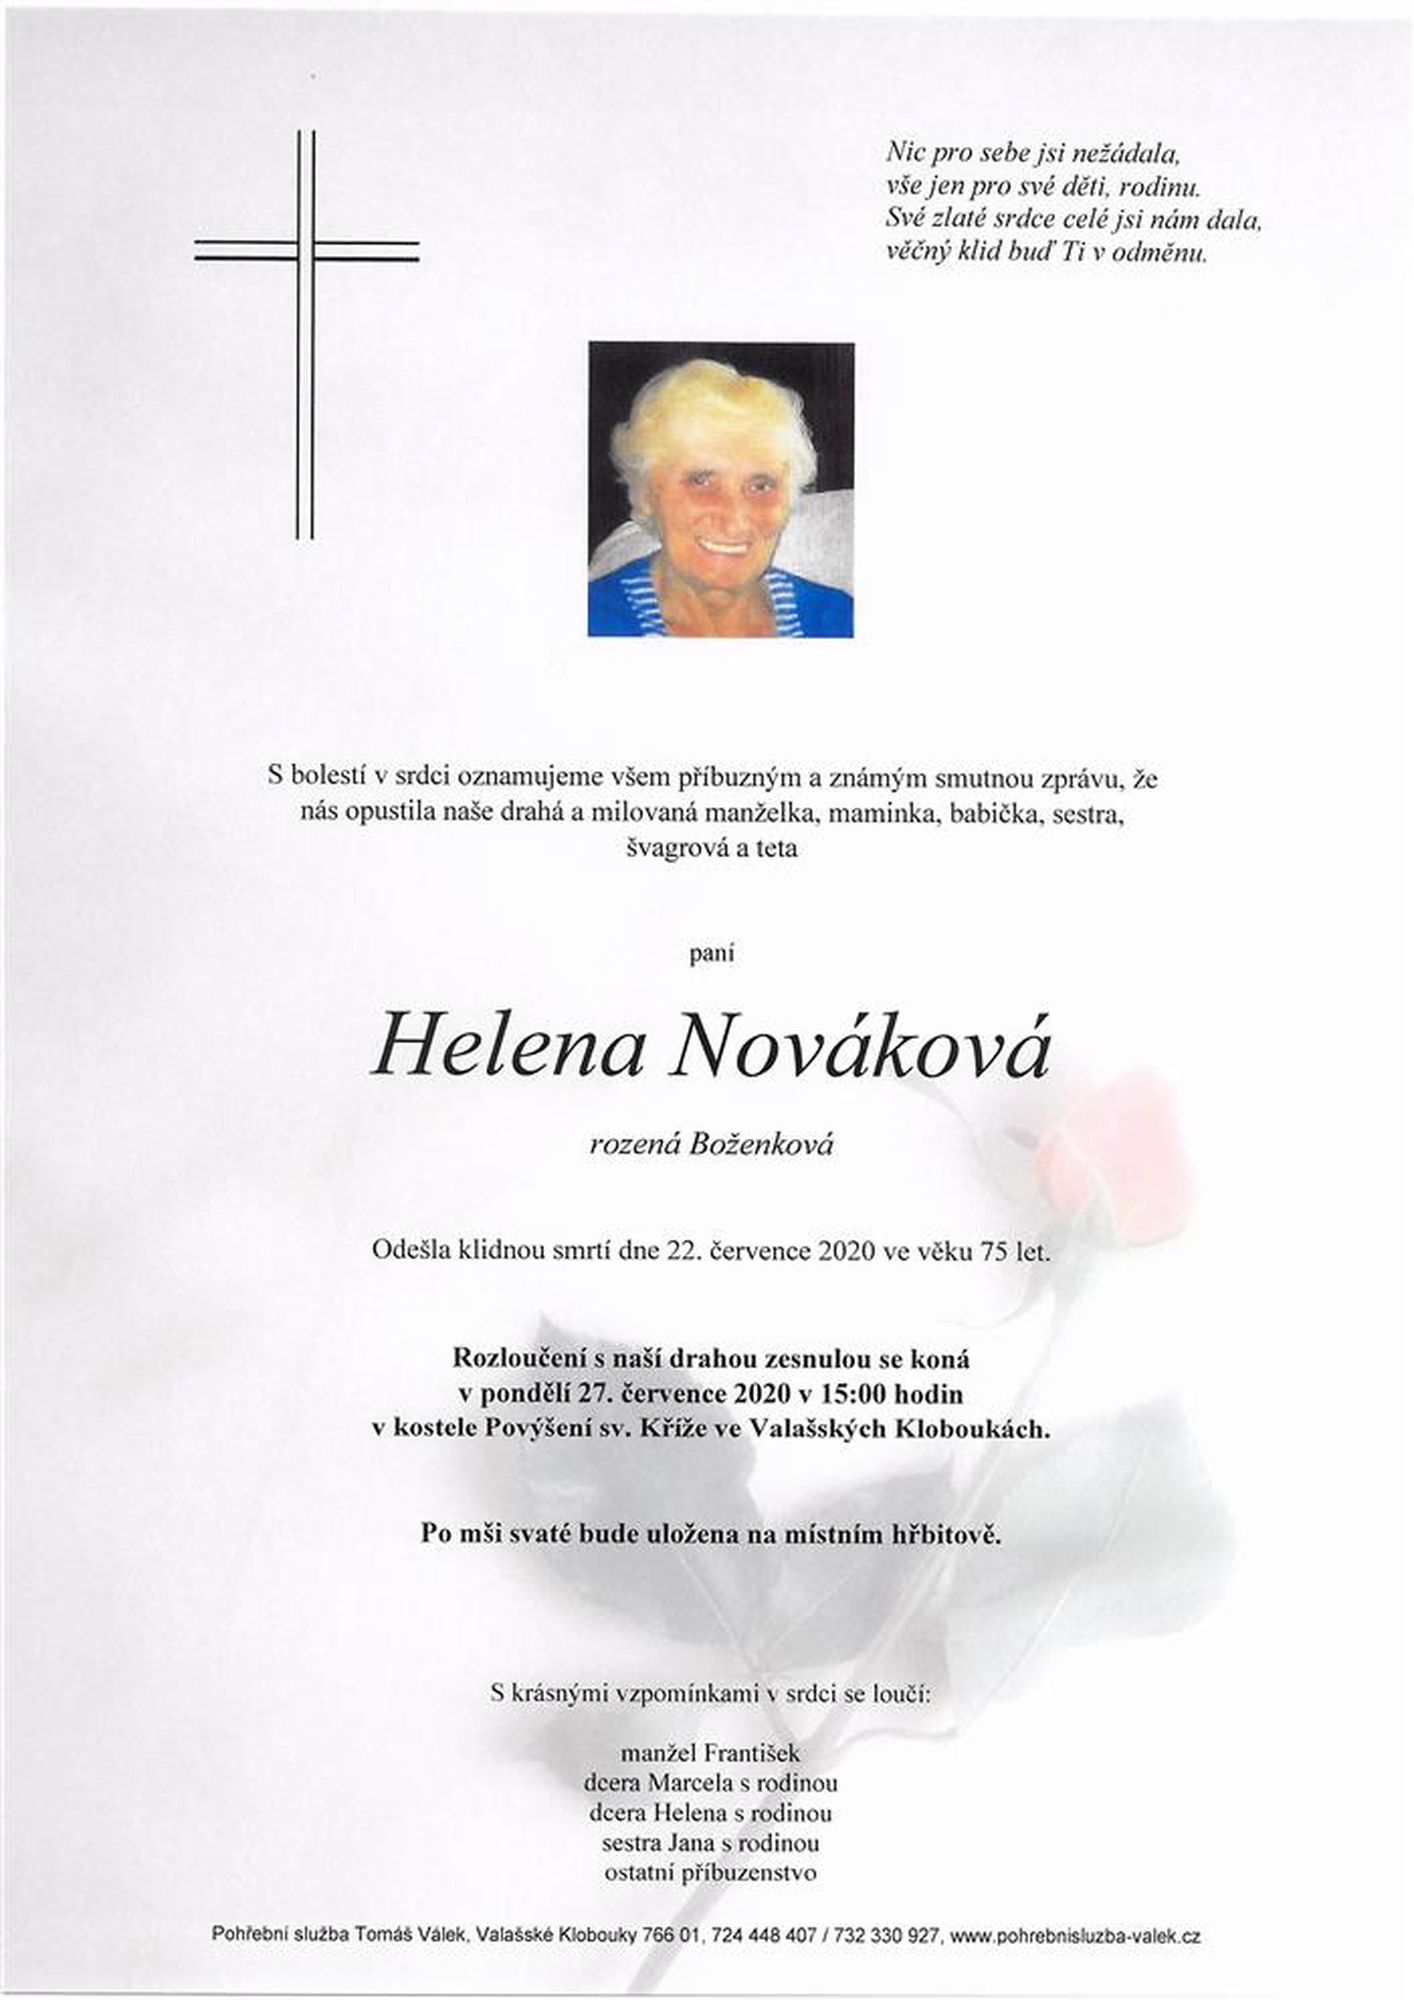 Helena Nováková